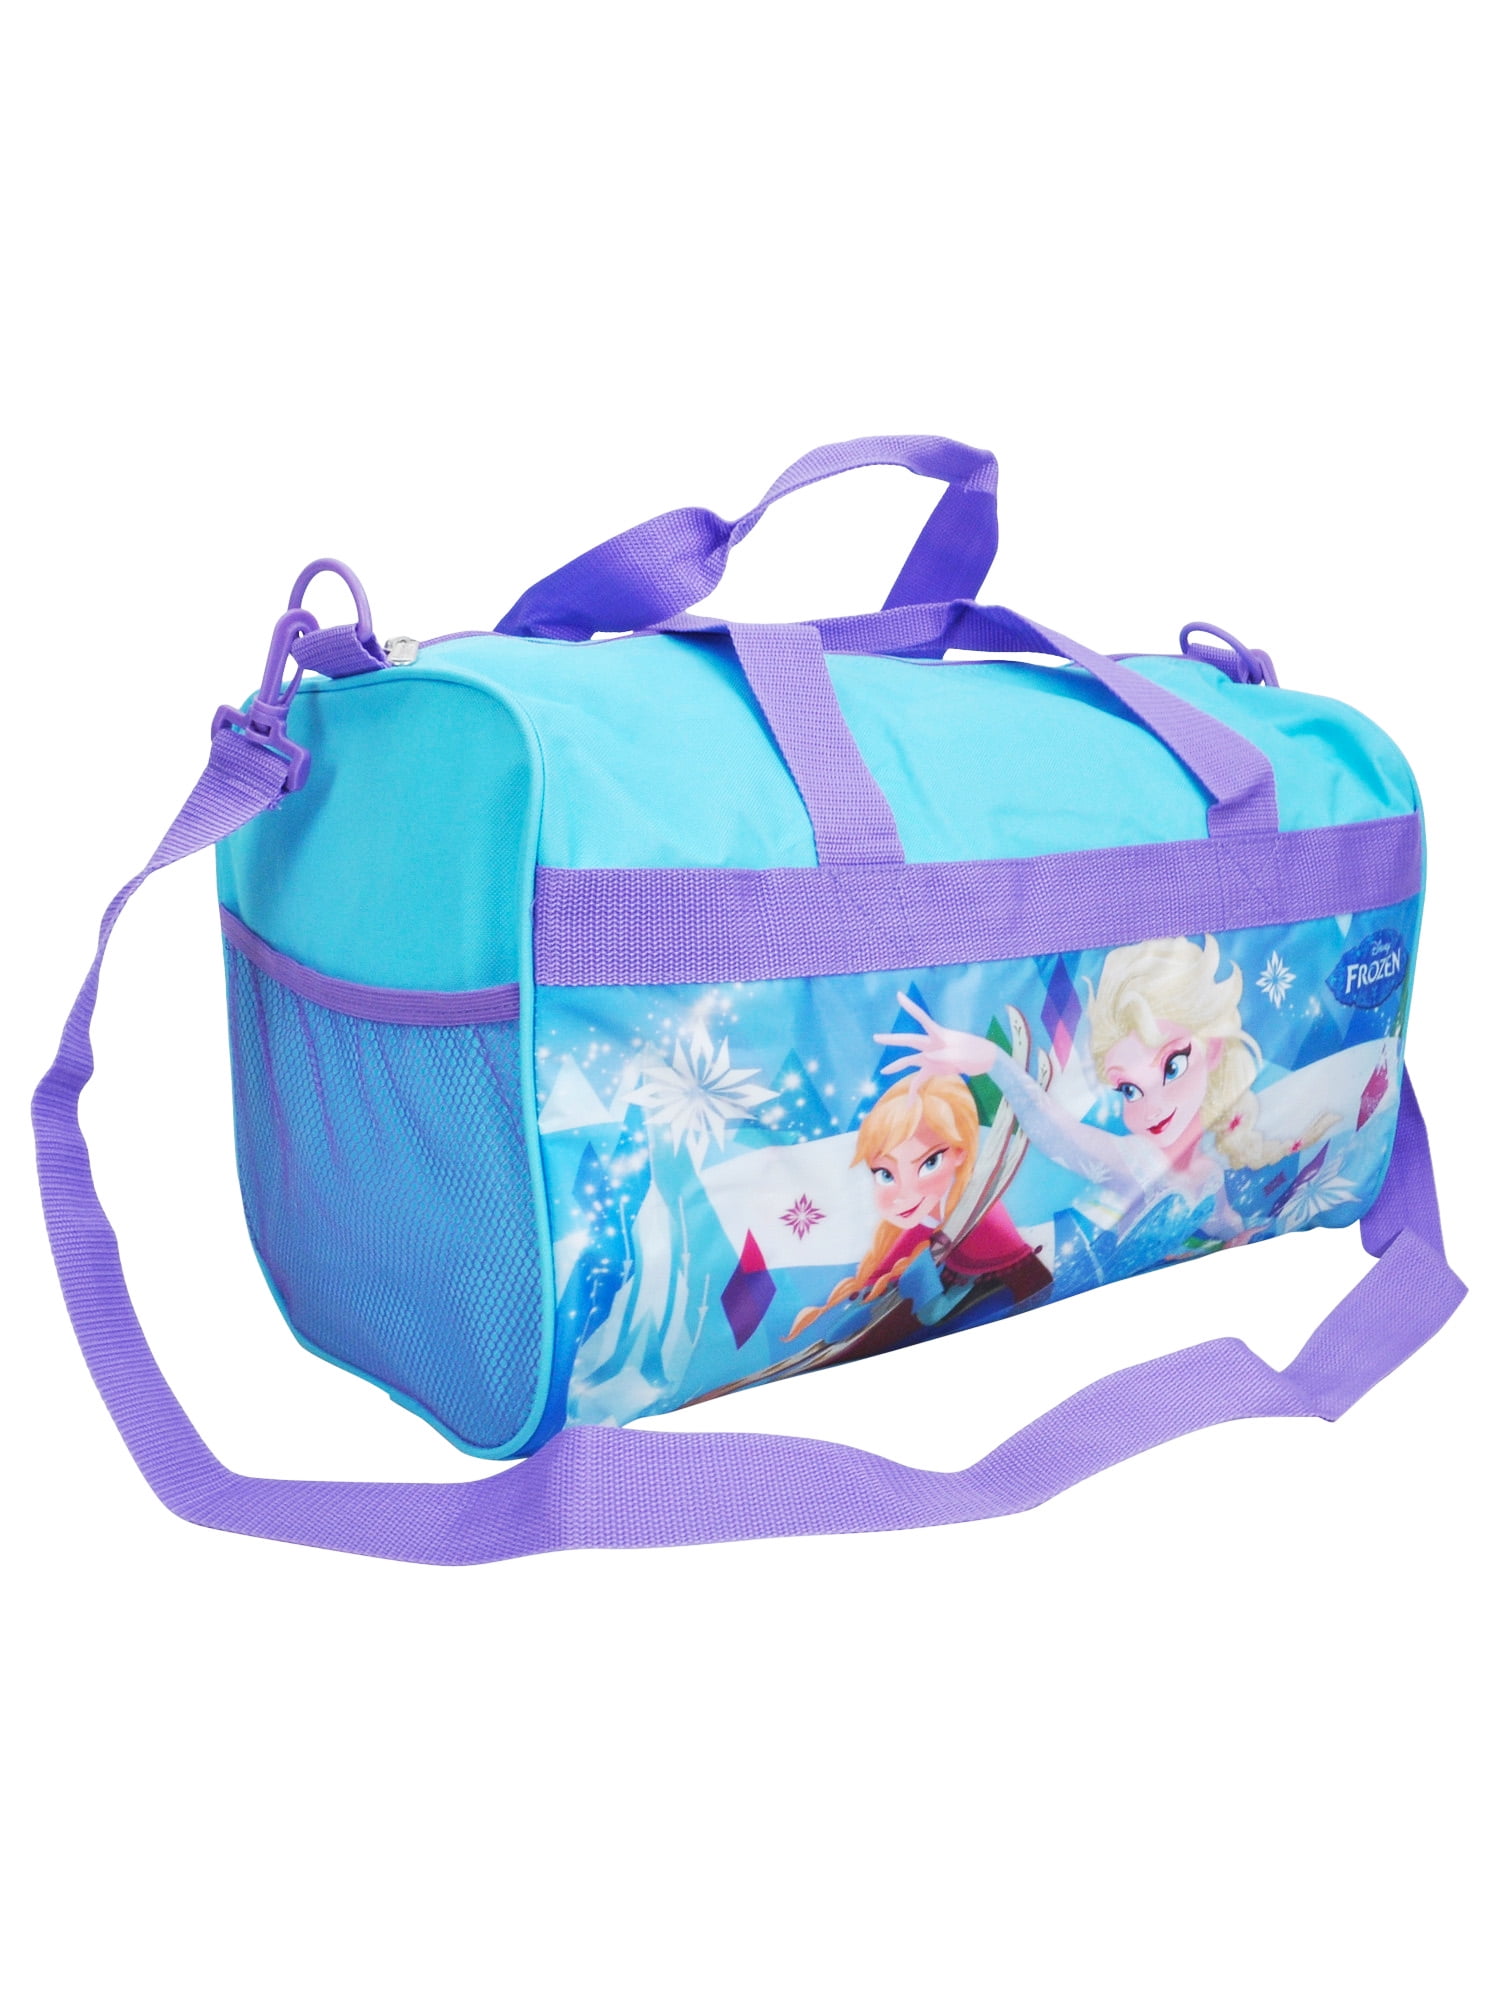 Disney Frozen Elsa Anna Carry On Duffel Bag 18 Blue Purple 5d83ab46 070a 46cb aa32 609e6ef5f60c 1.a0ec406c3b159f3626edfd0aeafb1f9a